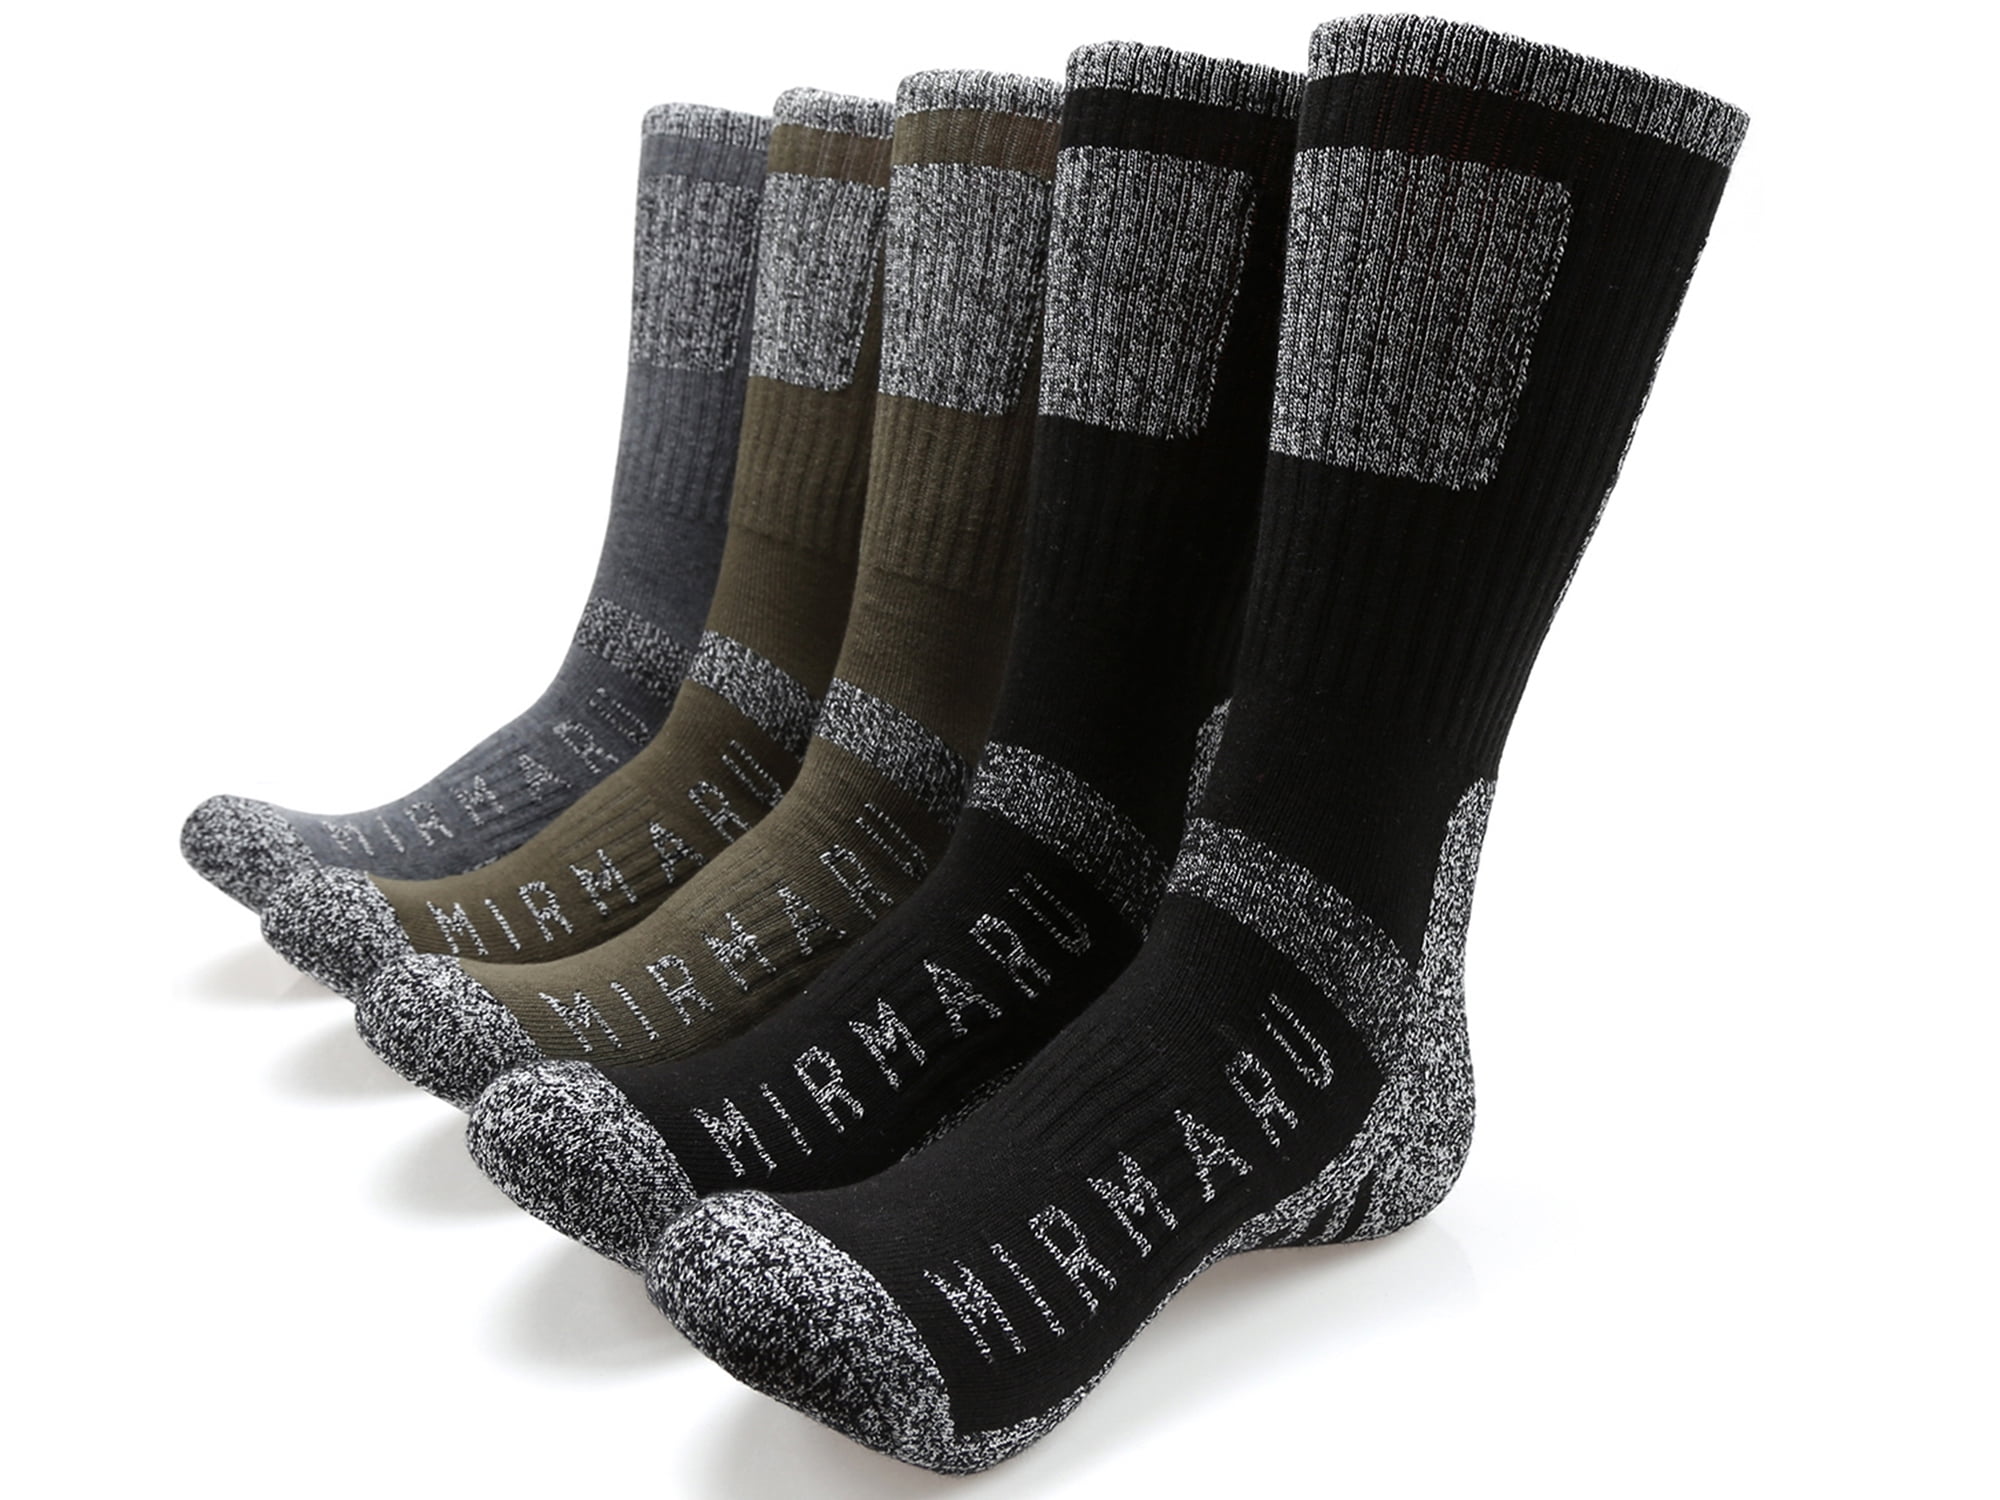 3,6 Pairs Men's Merino Wool Socks Outdoor Walking Work Boot Thermal Socks 6-11 